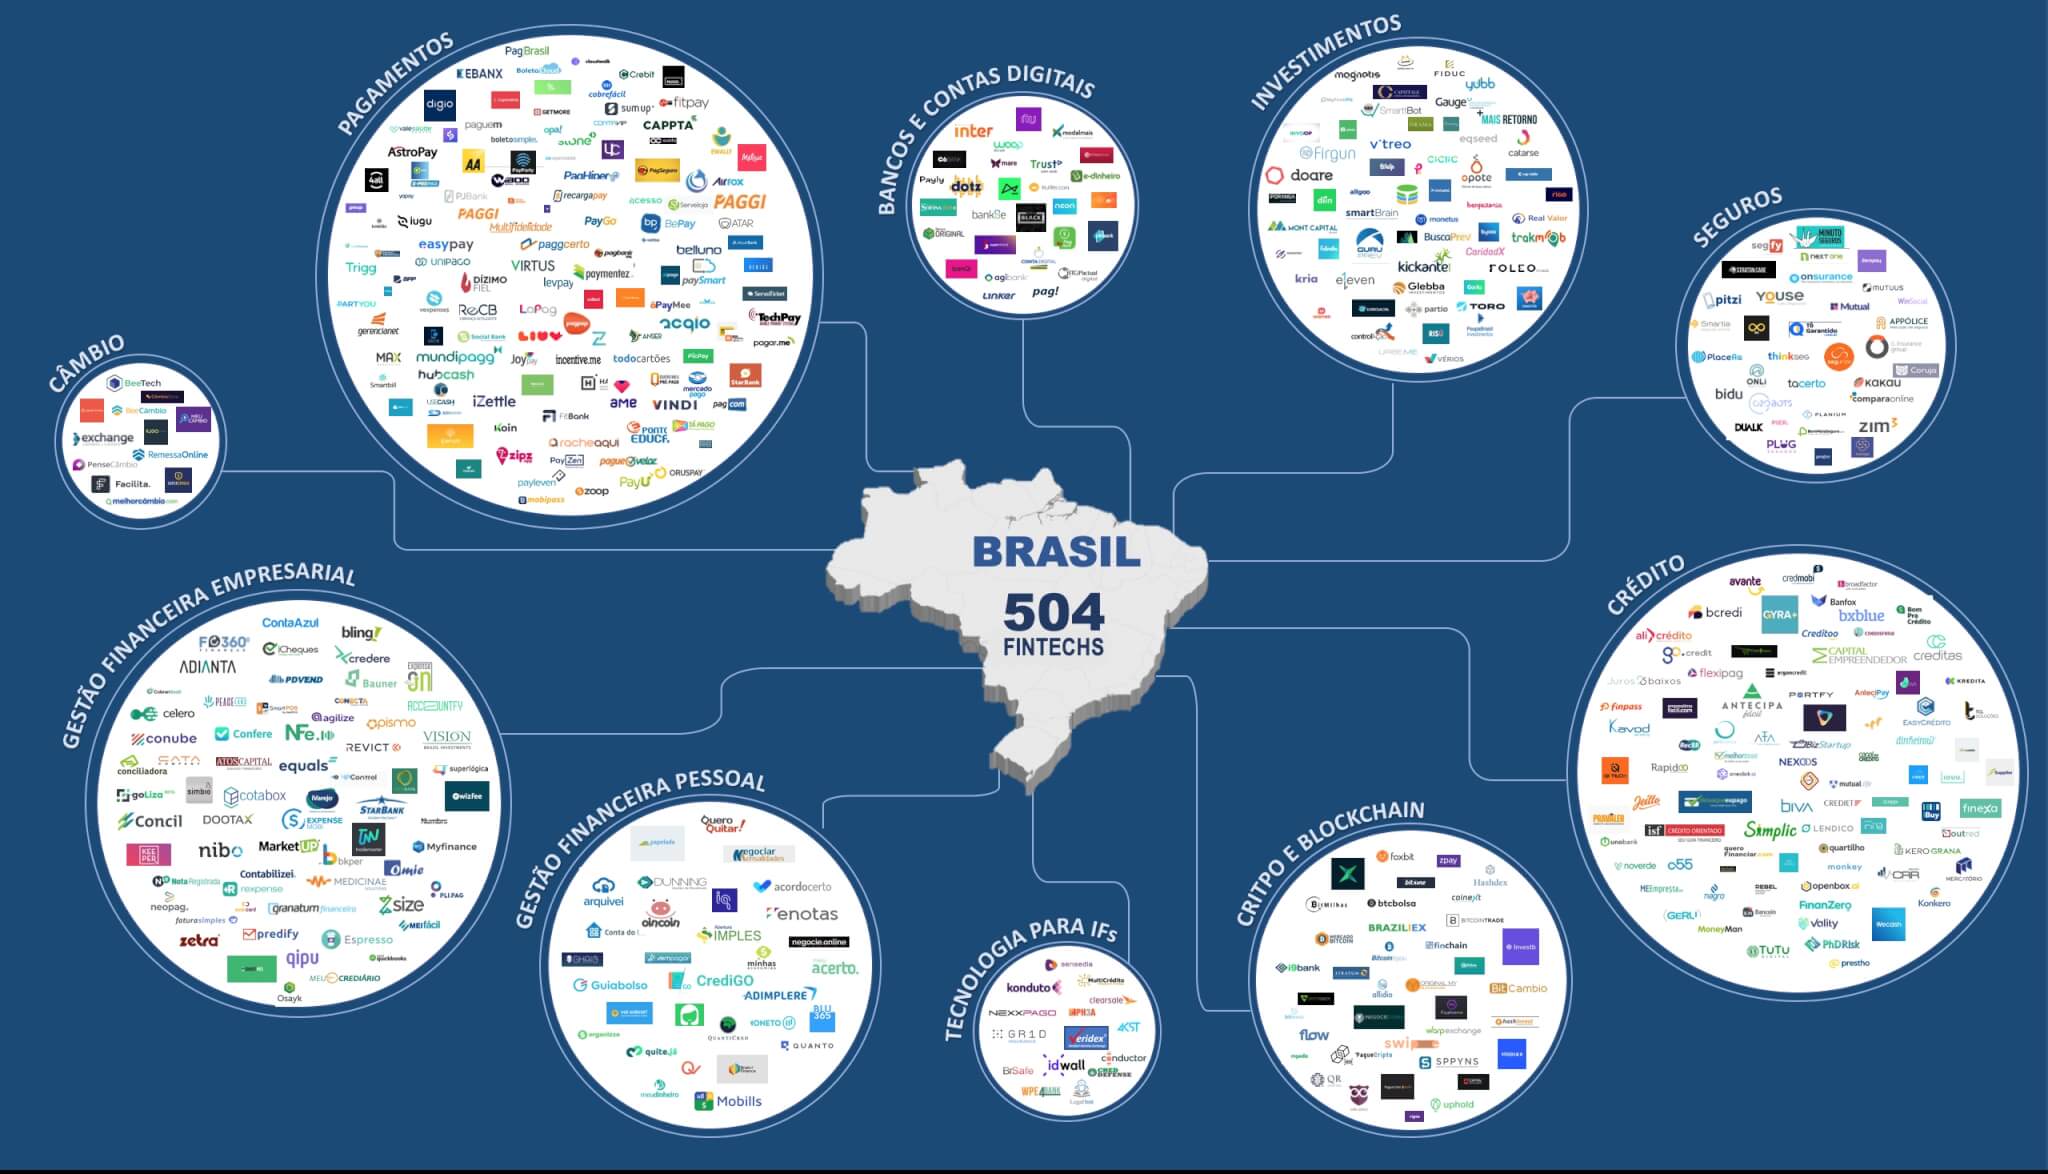 Fintech-Brazil